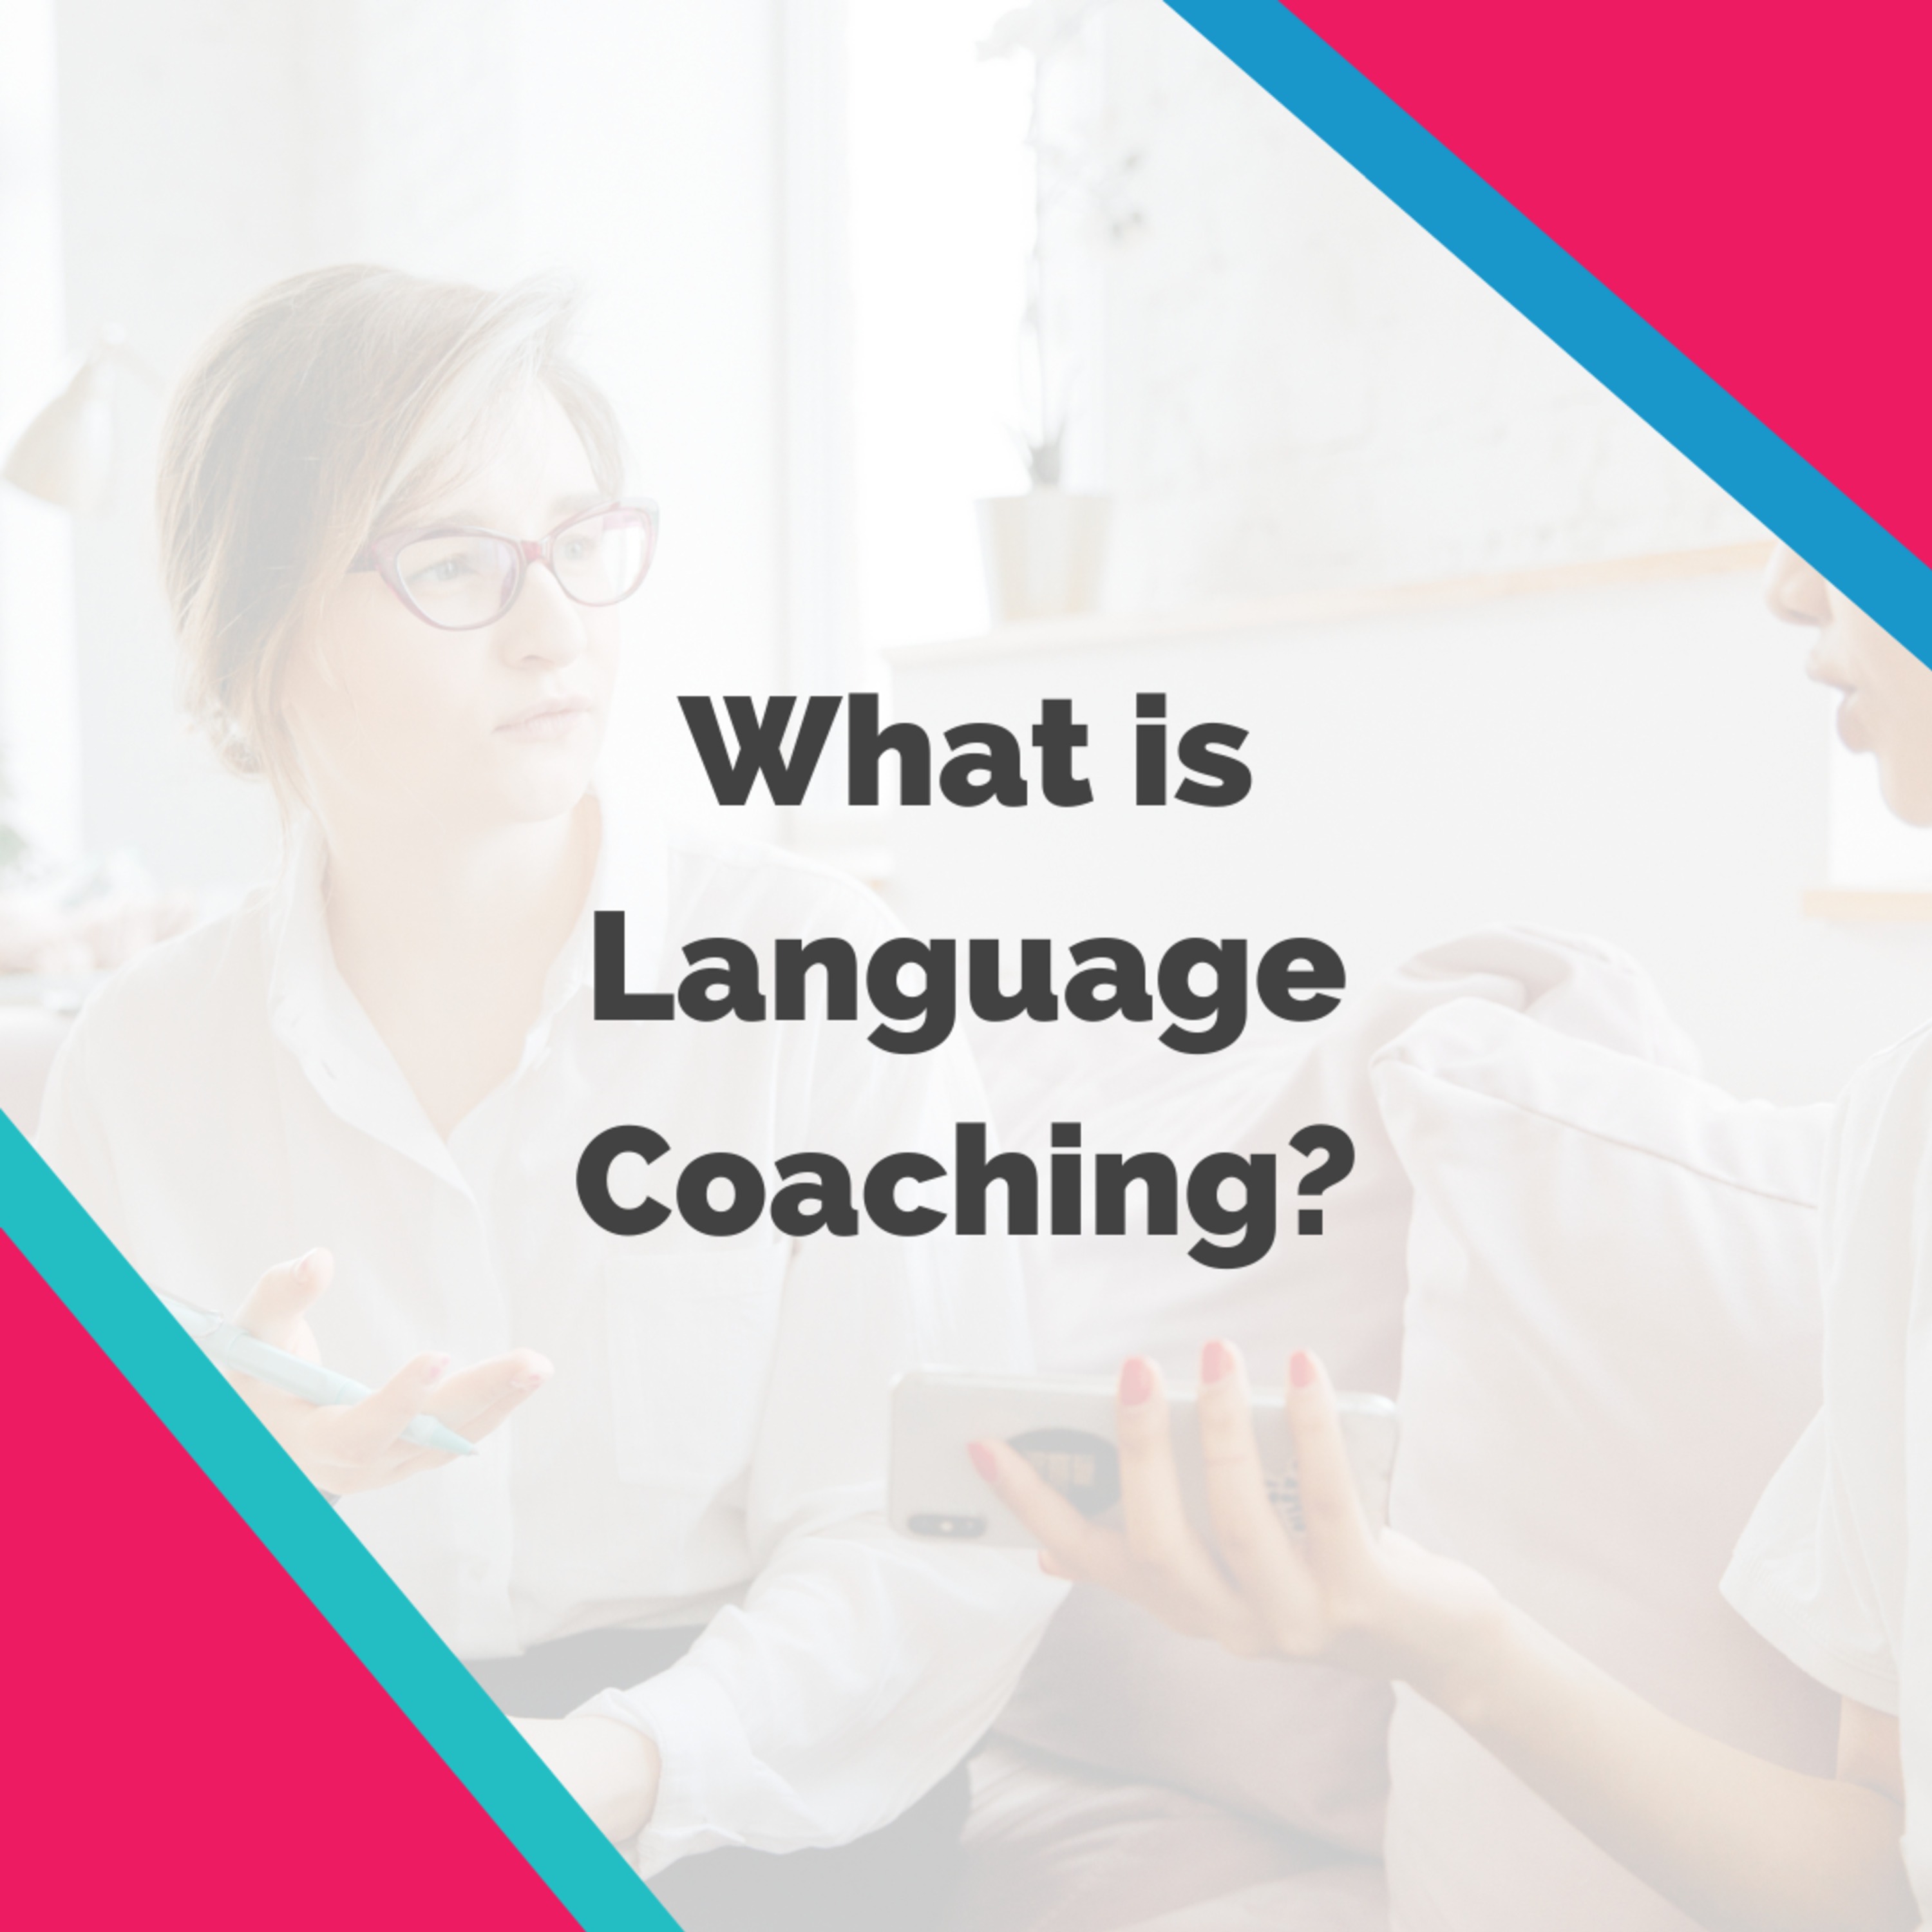 What is Language Coaching?